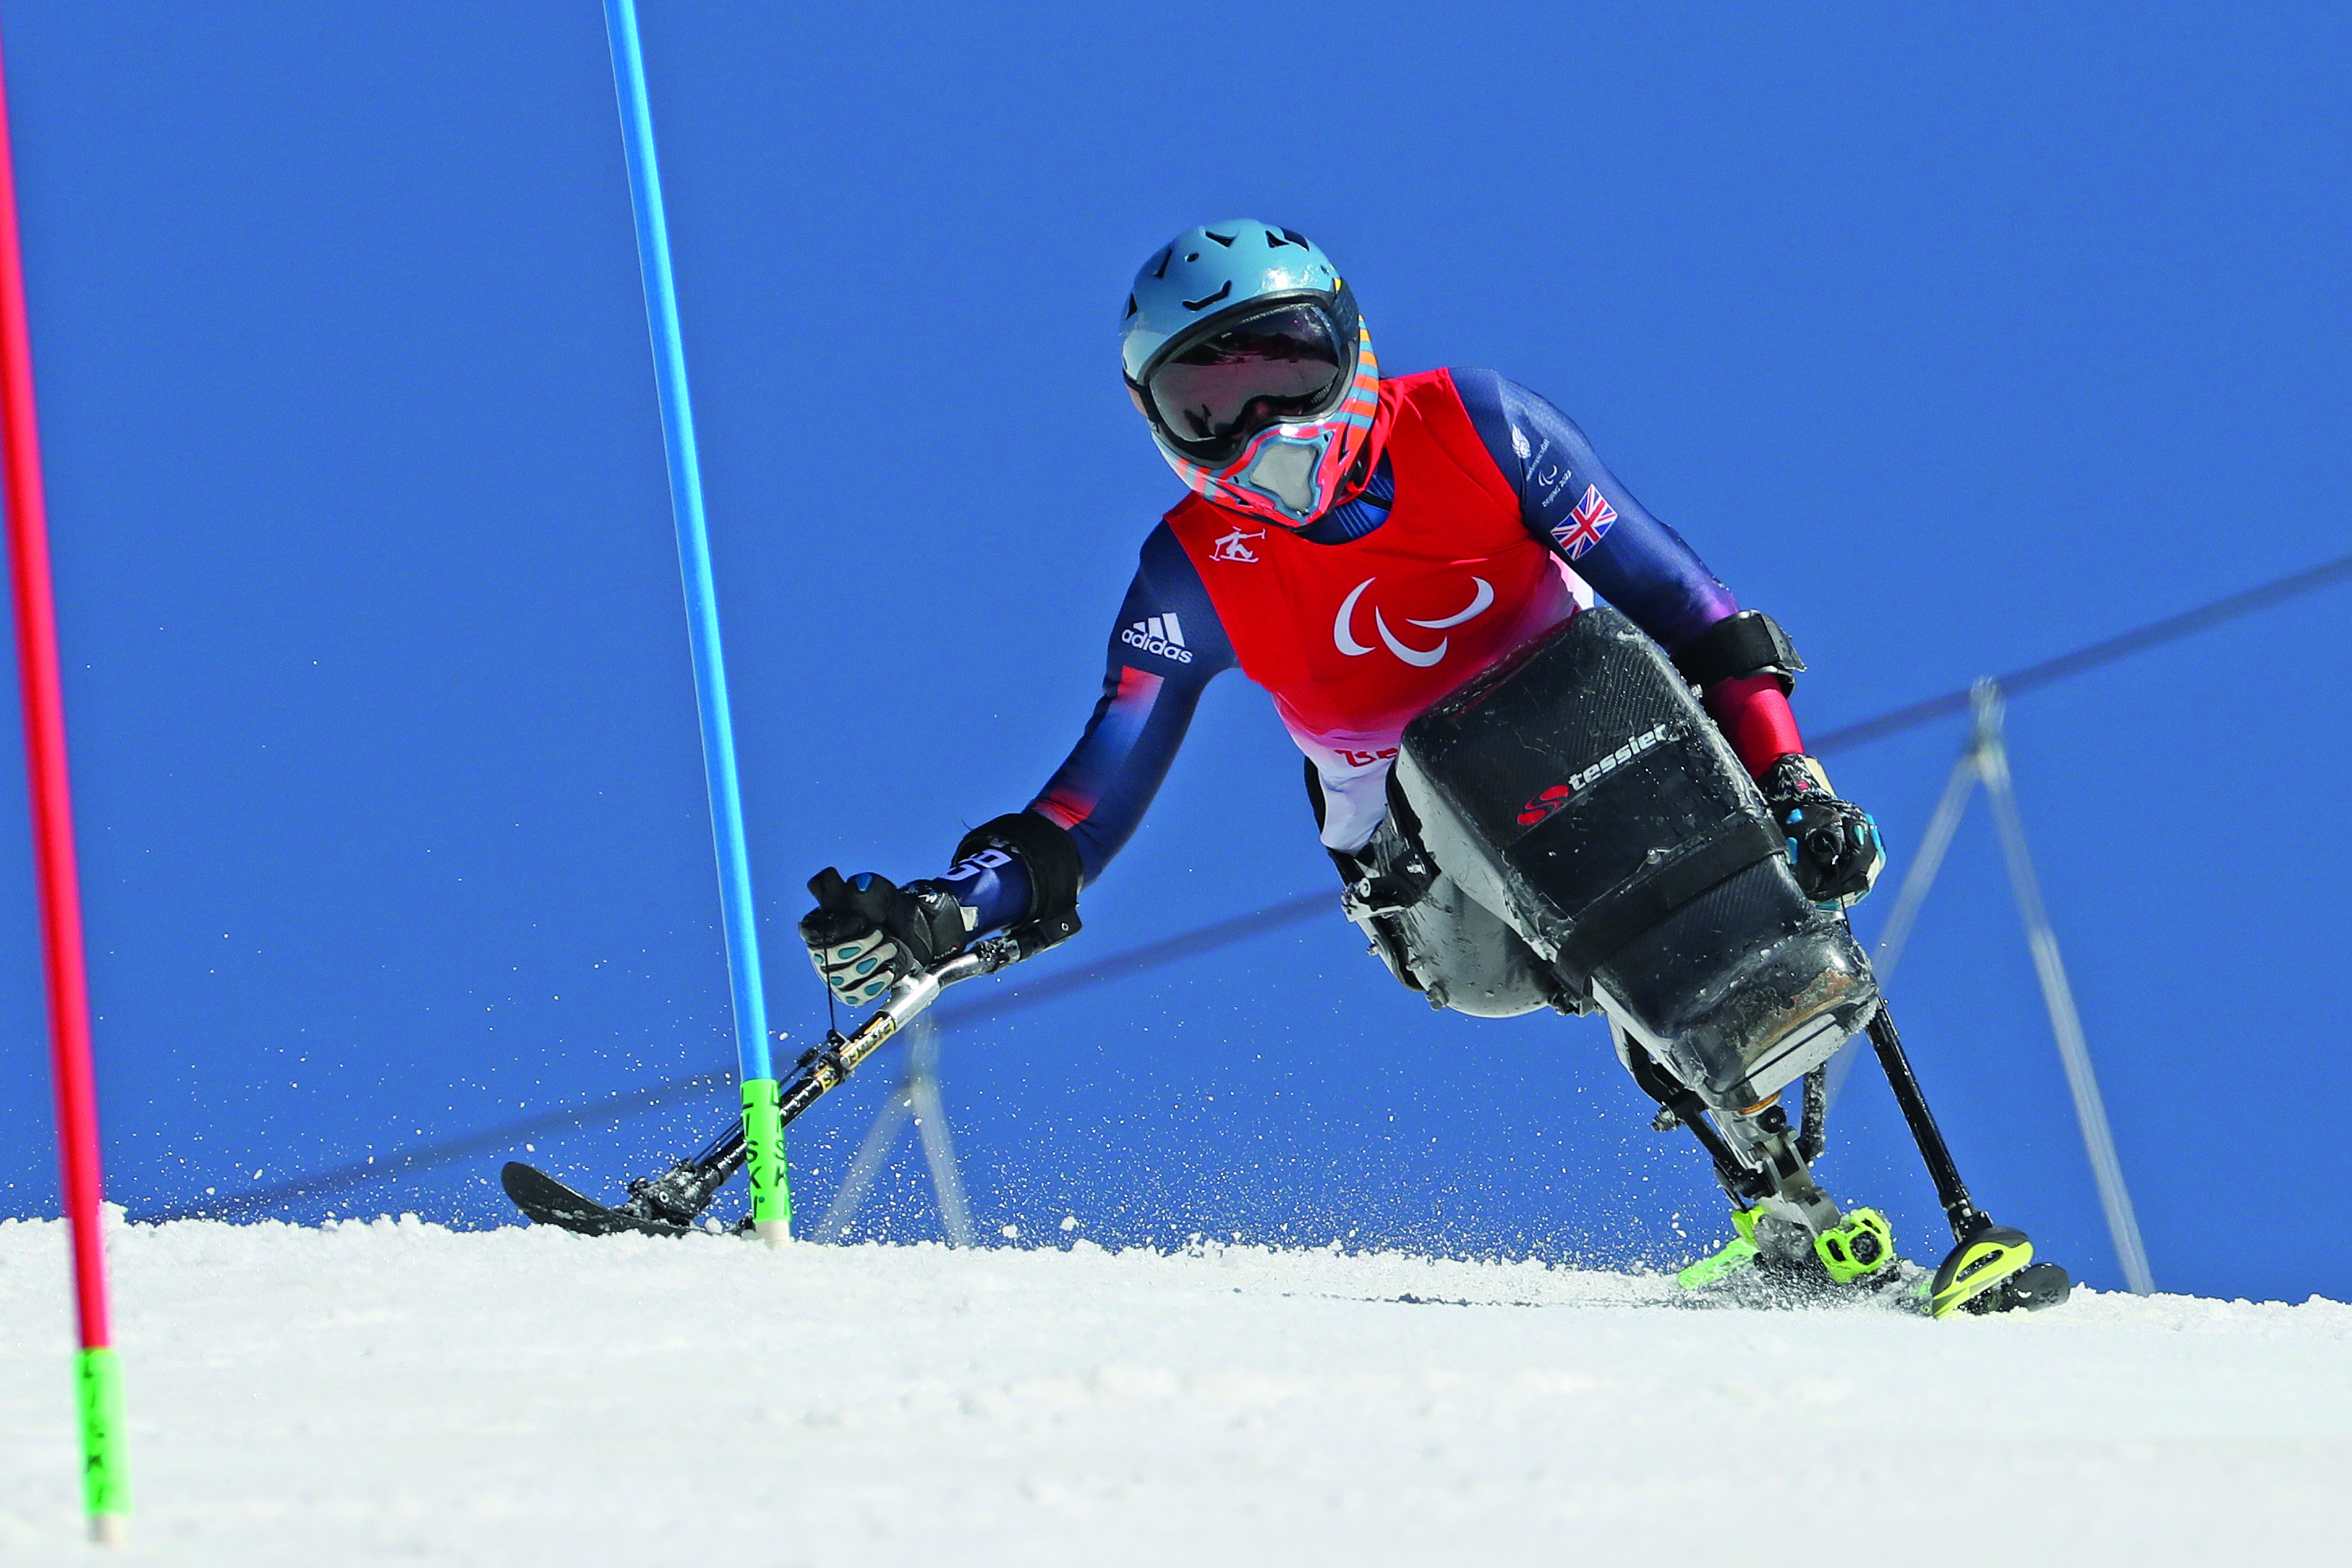 Skier uses mono-ski on the ski course.